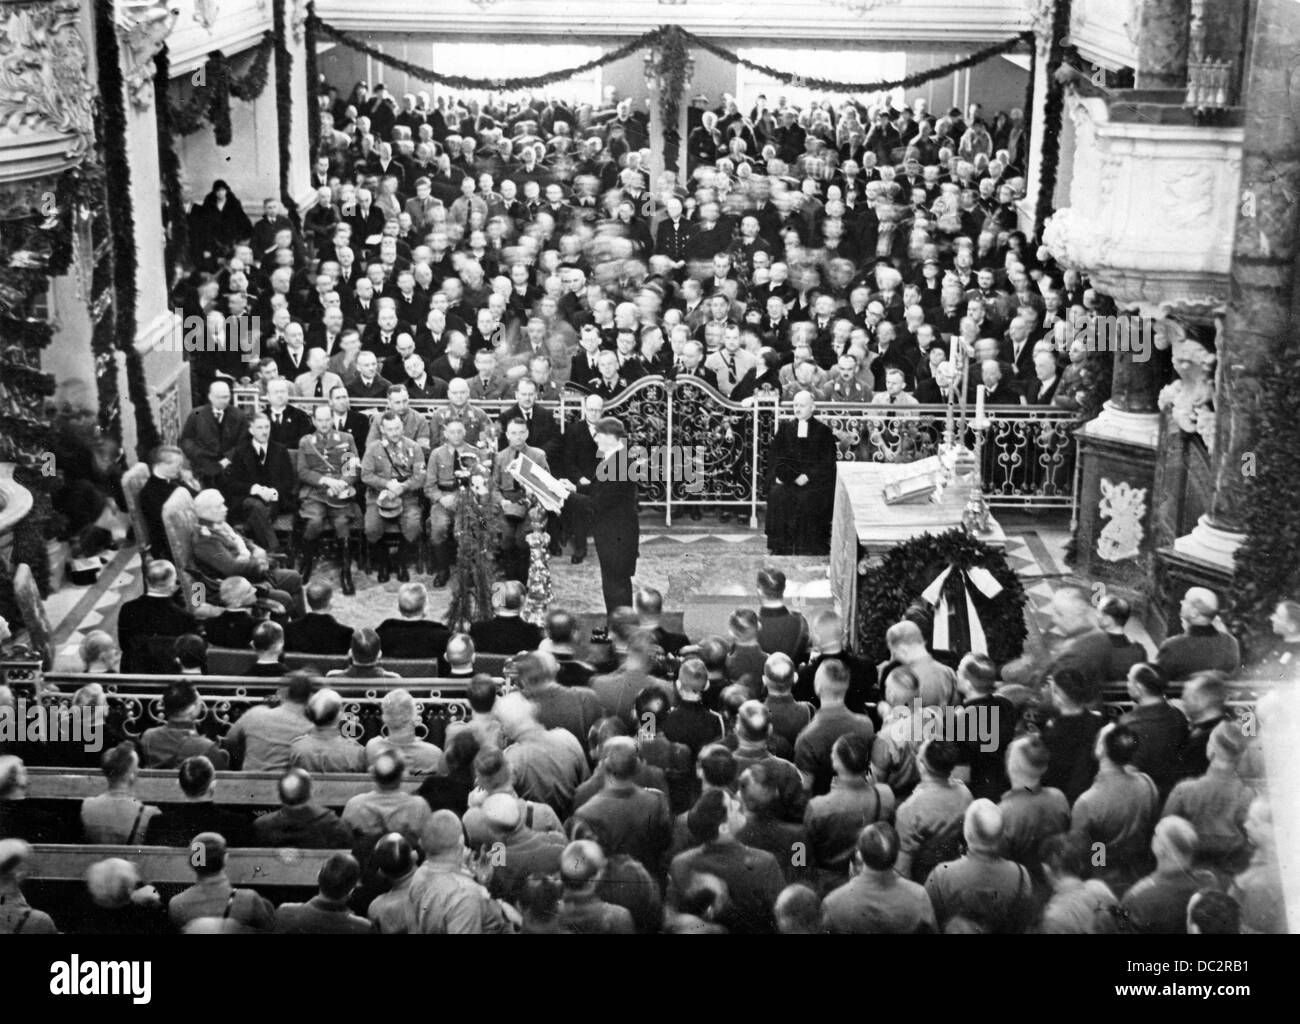 Le chancelier de Reich Adolf Hitler prononce un discours à l'occasion de la cérémonie de célébration de l'ouverture du Reichstag devant le président de Reich Paul von Hindenburg dans l'église de la garnison à Potsdam, en Allemagne, le 21 mars 1933. Fotoarchiv für Zeitgeschichte Banque D'Images